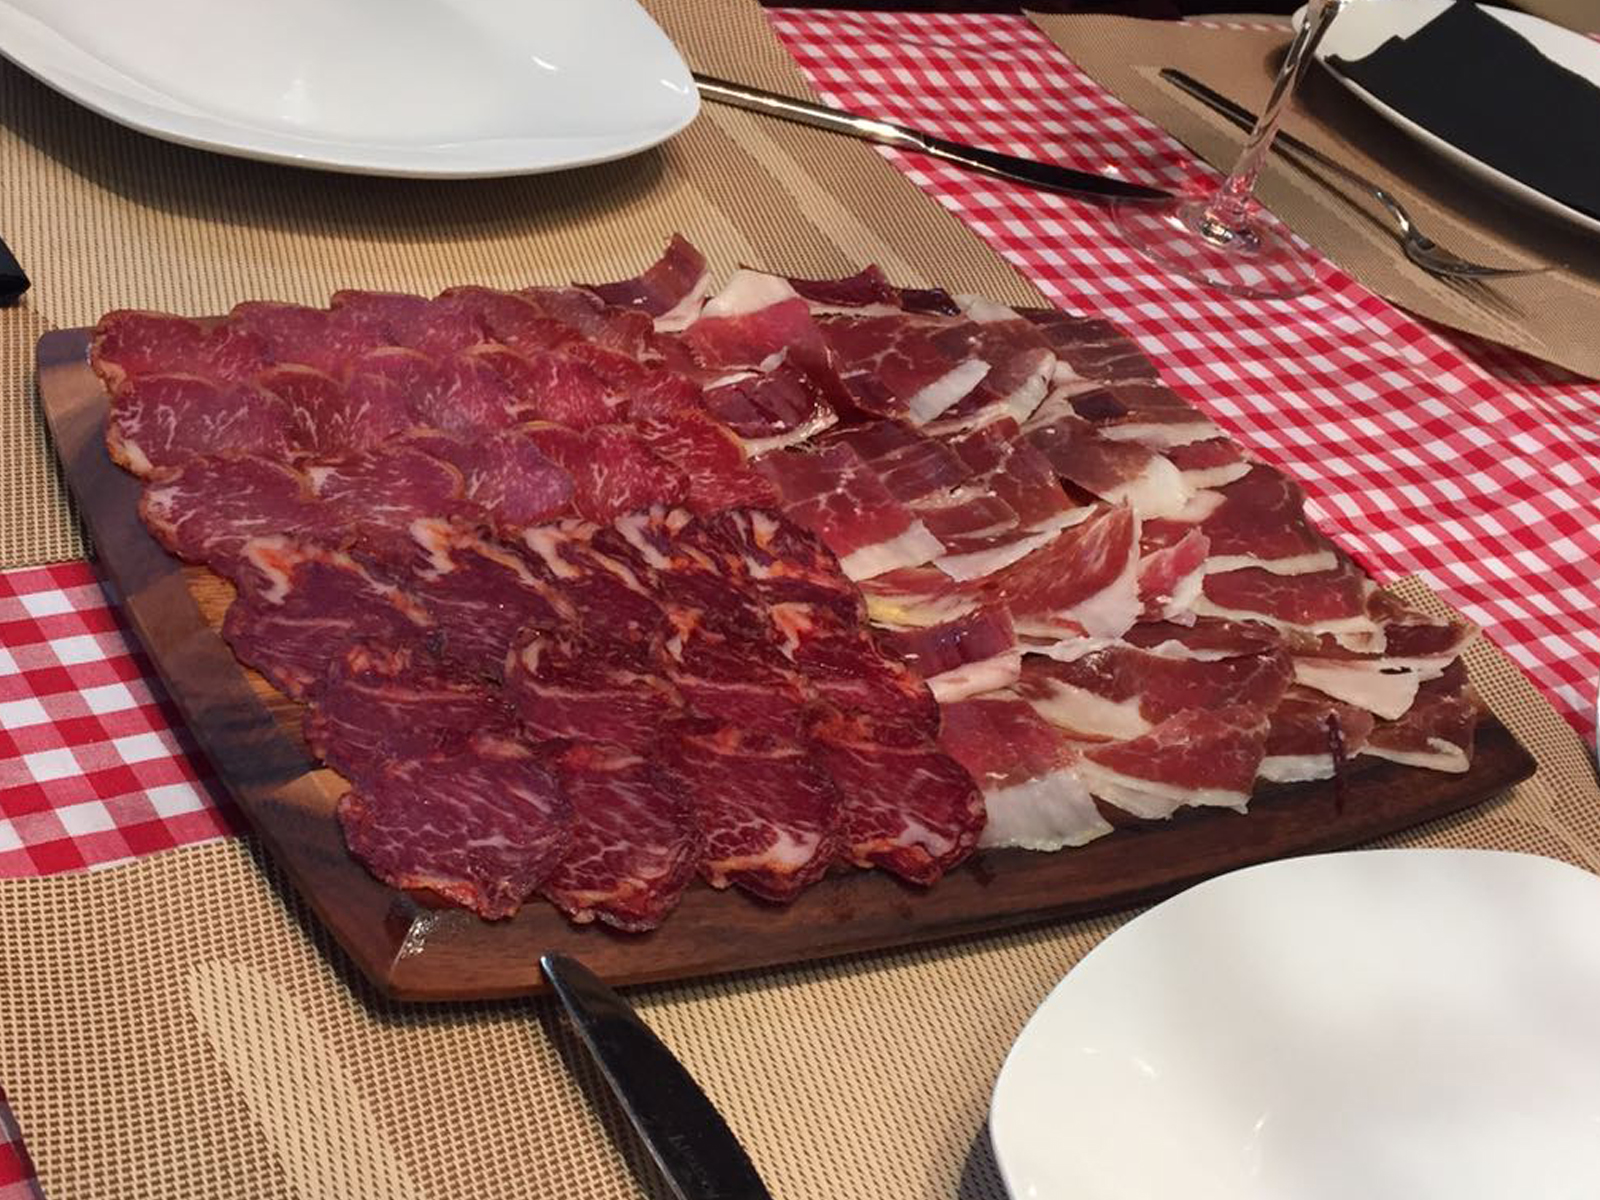 Restaurante de cocina vasca ubicado en el corazón de Bilbao con especialidad en carne a la brasa.        